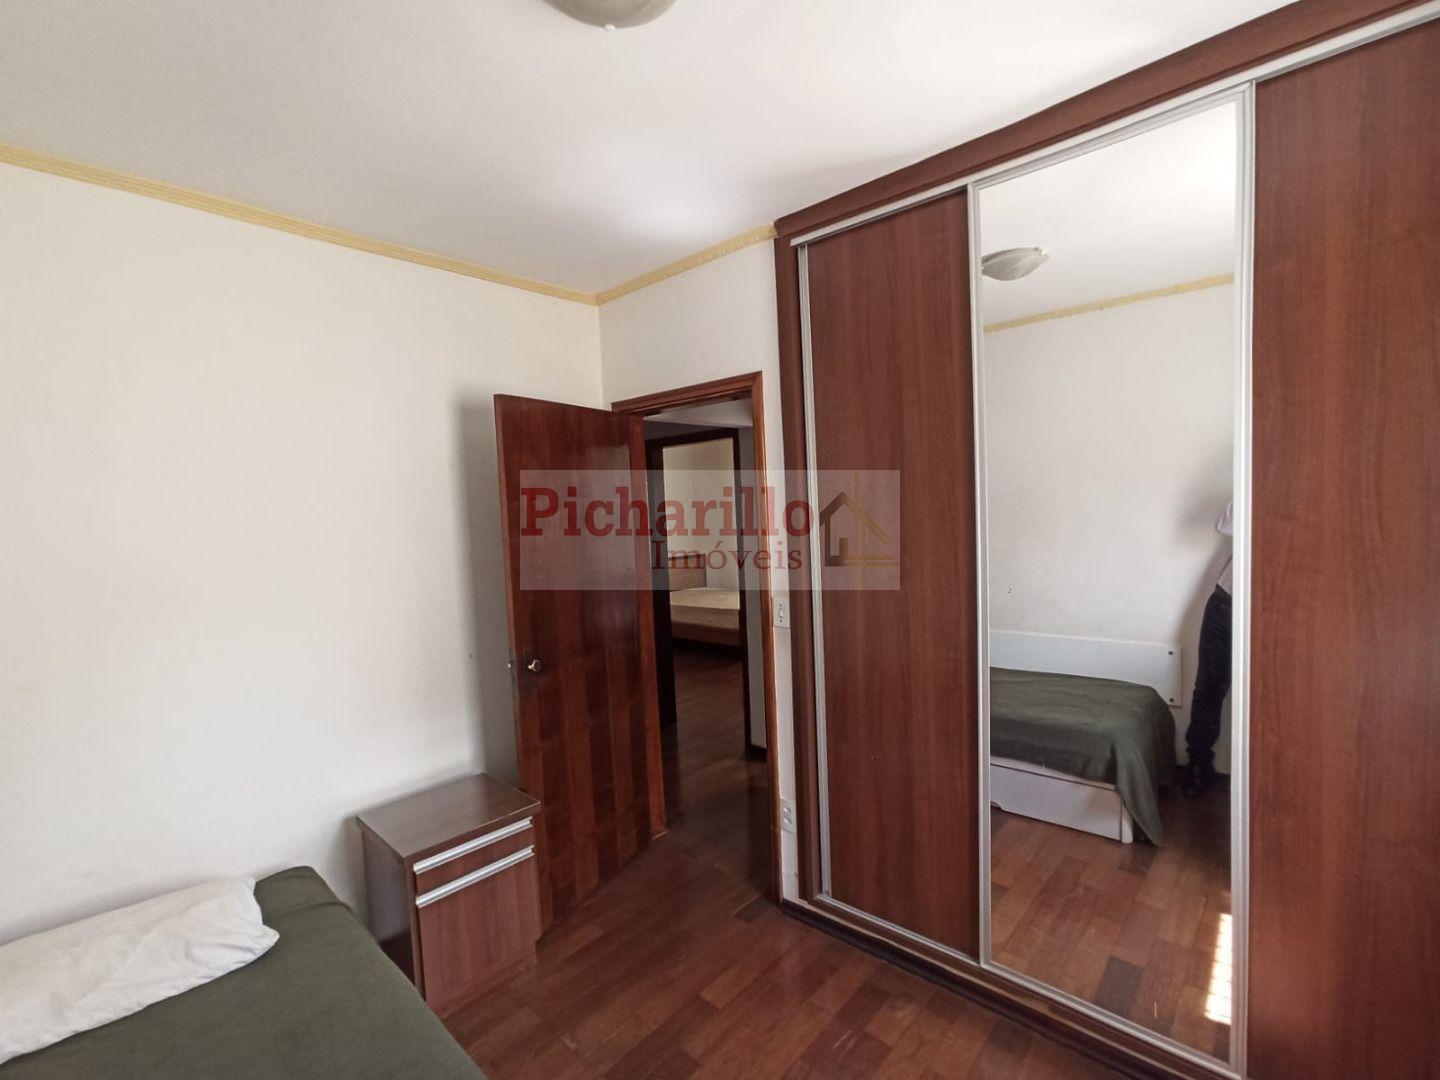 Casa com 3 dormitórios à venda, 216 m² por R$ 690.000 - Jardim Hikare - São Carlos/SP